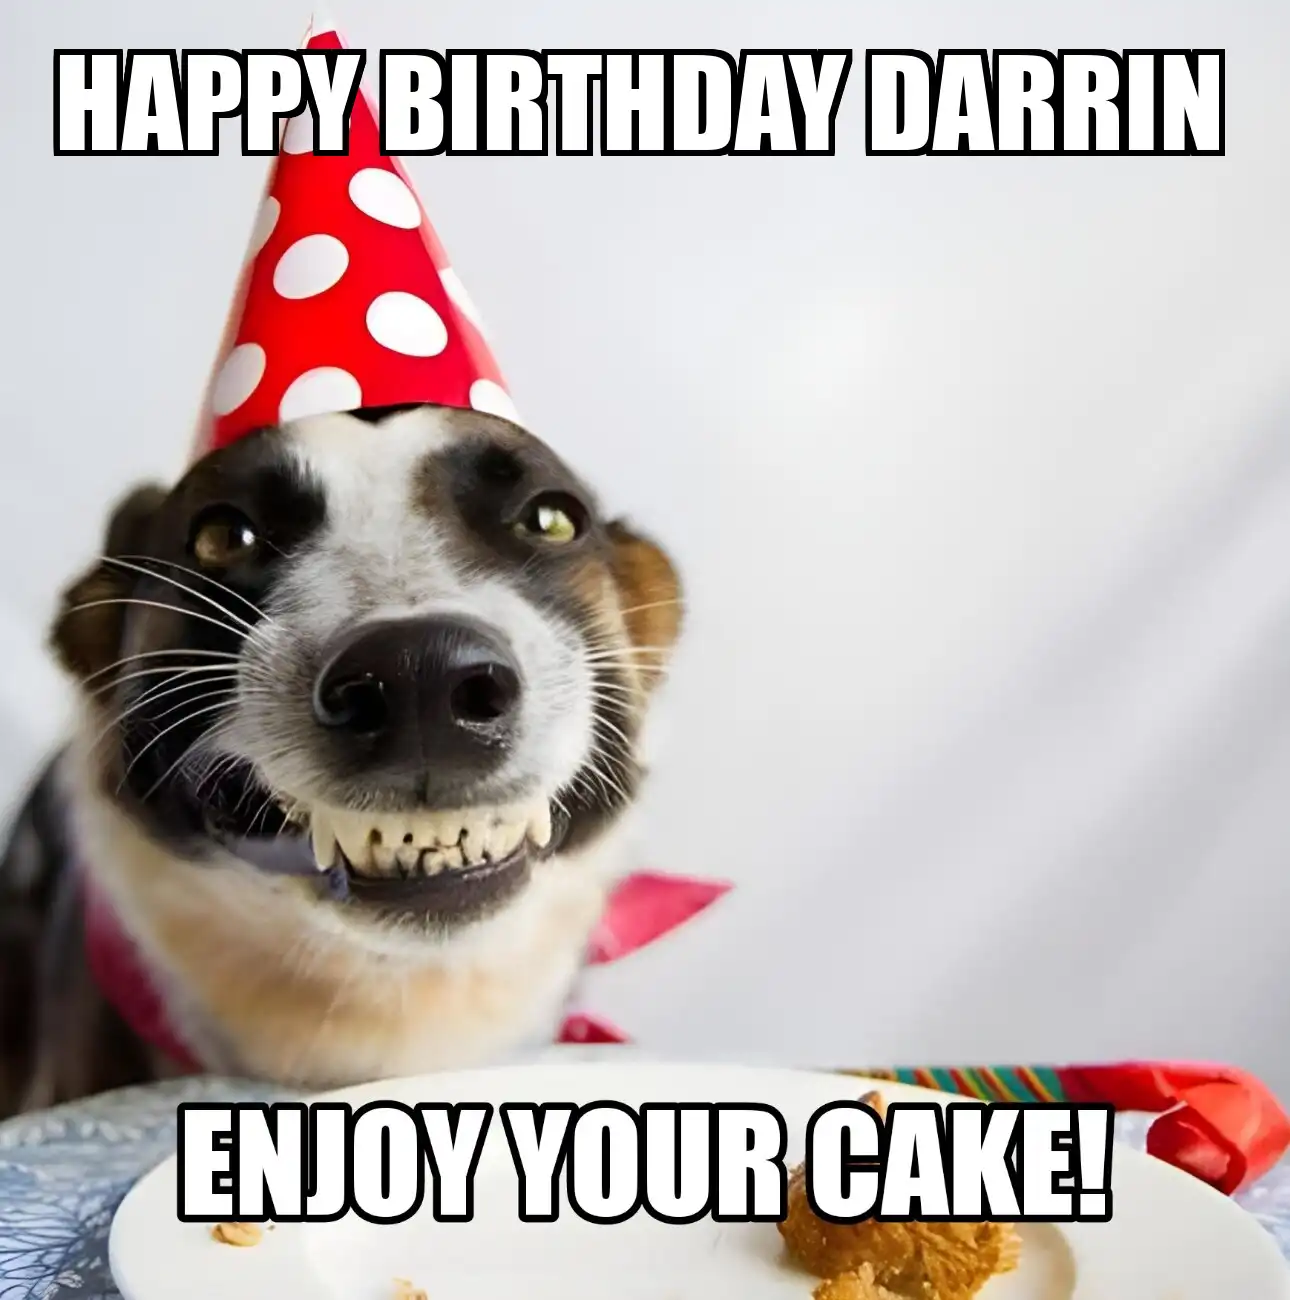 Happy Birthday Darrin Enjoy Your Cake Dog Meme